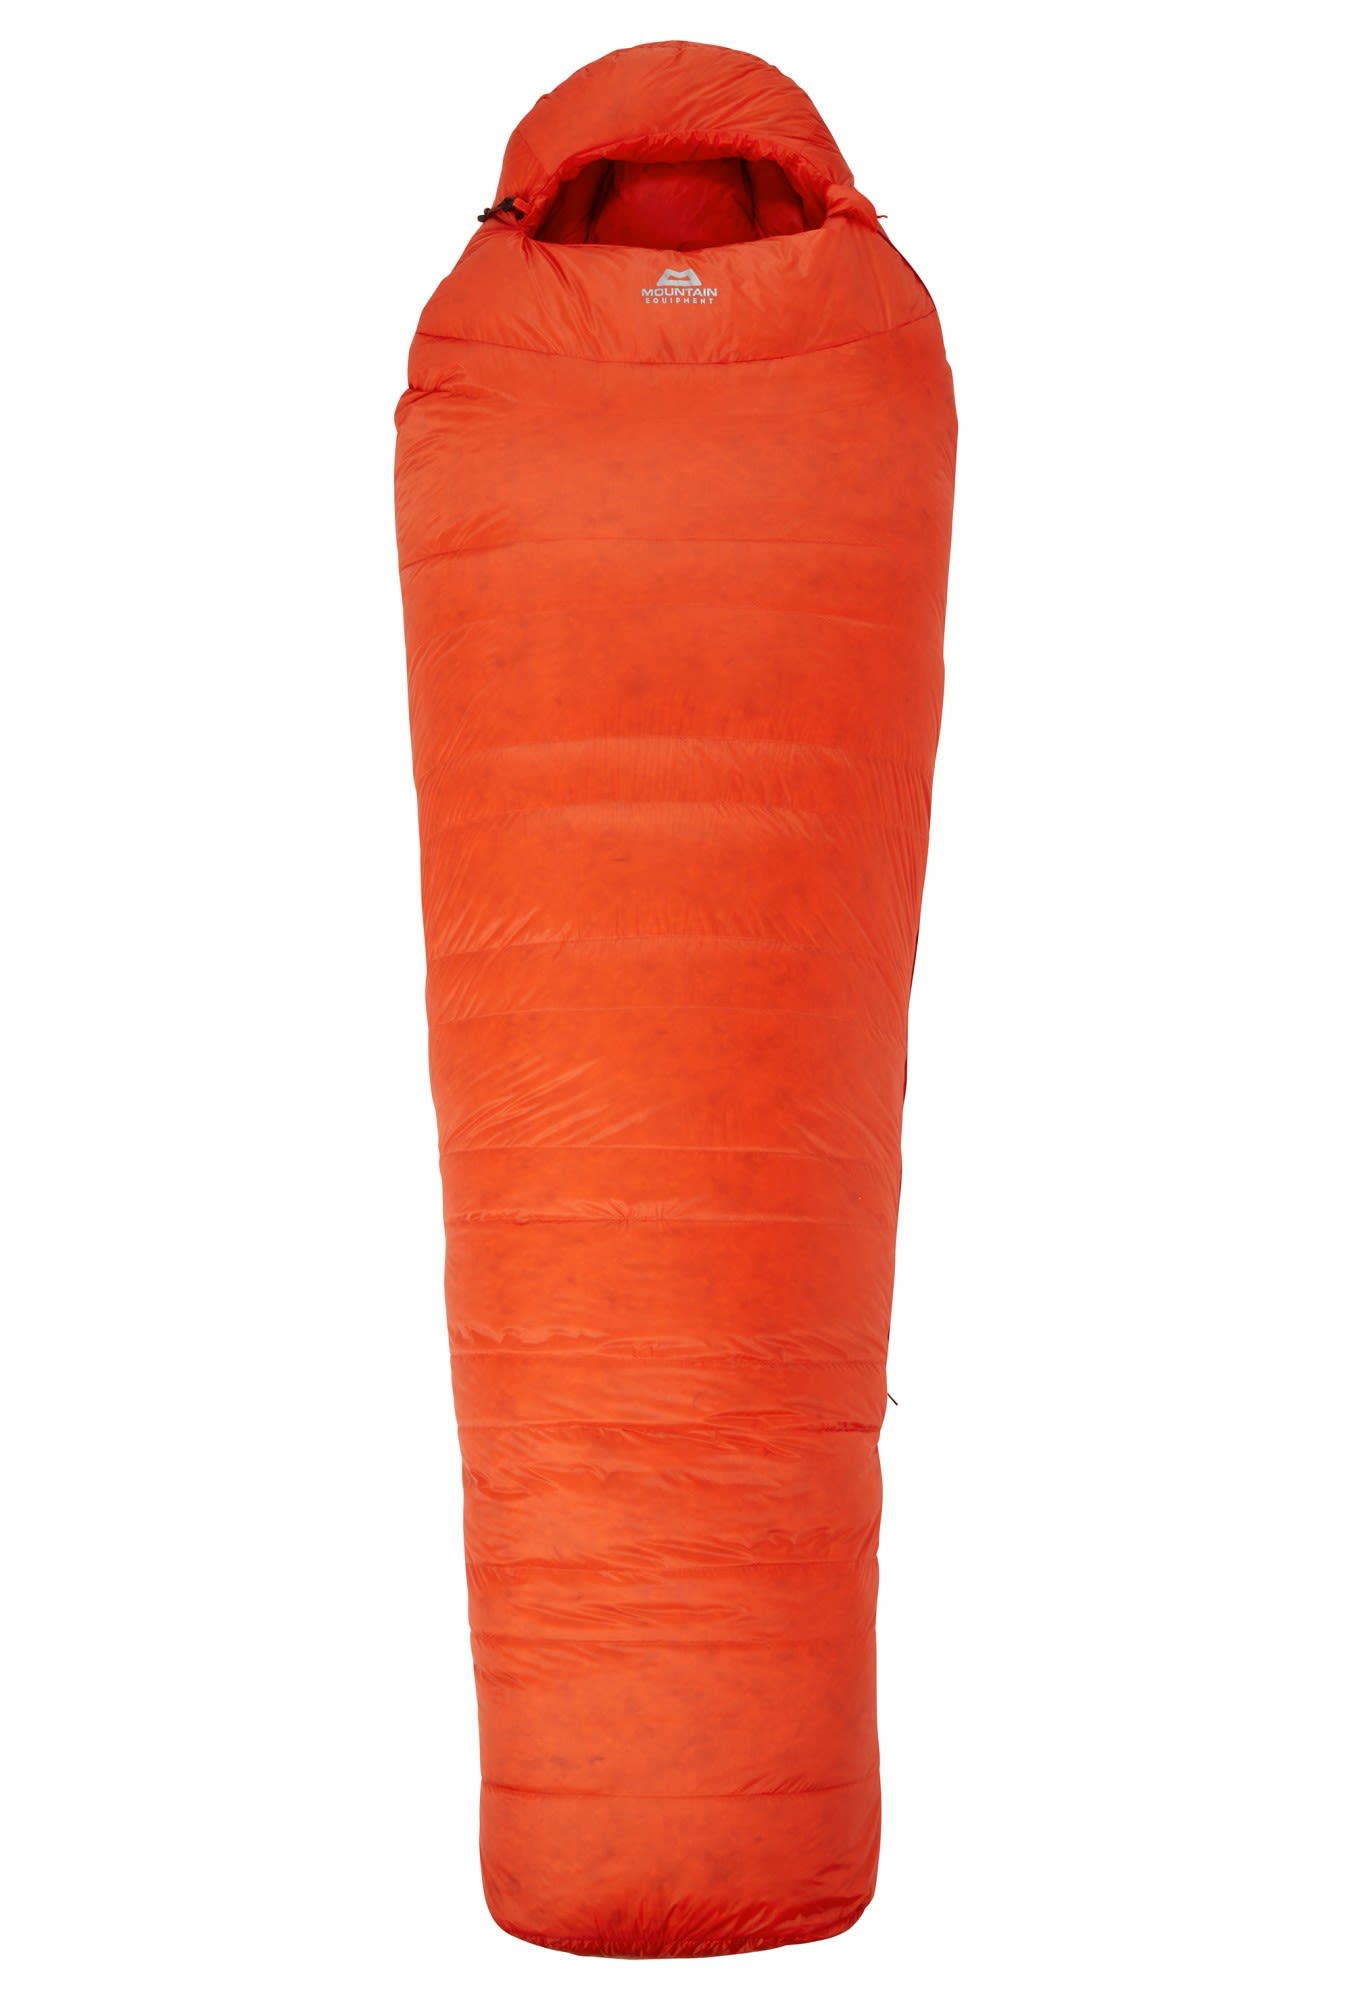 Mountain Equipment Xeros Long Orange | Größe 205 cm - RV links |  Daunenschlaf